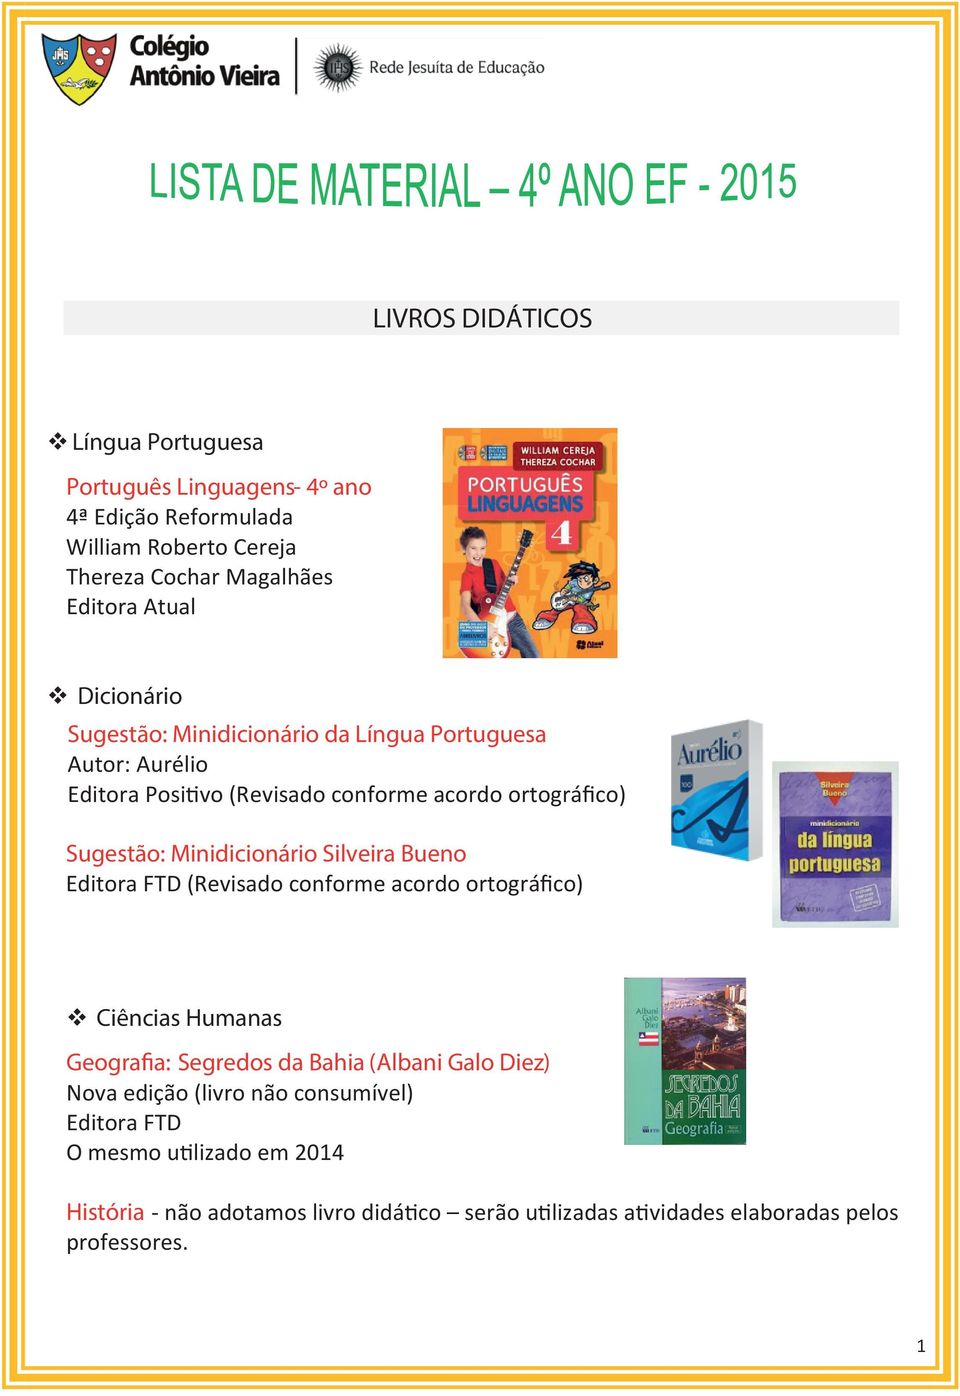 Minidicionário Silveira Bueno Editora FTD (Revisado conforme acordo ortográfico) Ciências Humanas Geografia: Segredos da Bahia (Albani Galo Diez) Nova